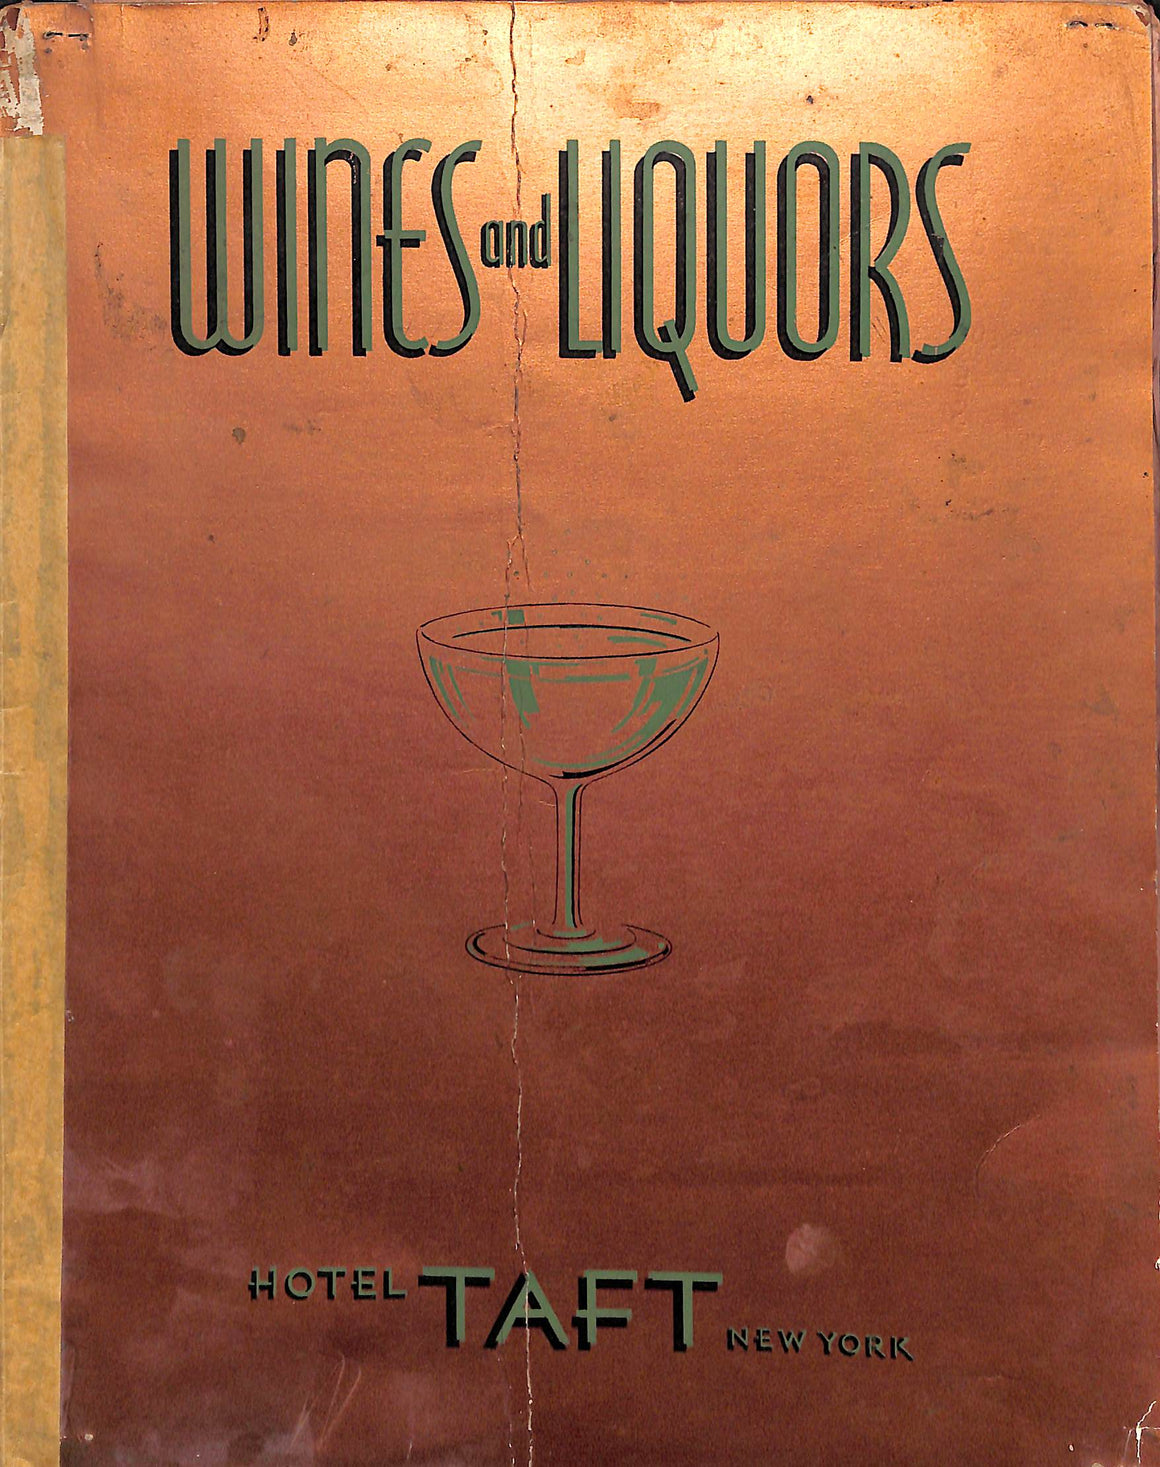 Hotel Taft New York Wines And Liquors 1933 Menu